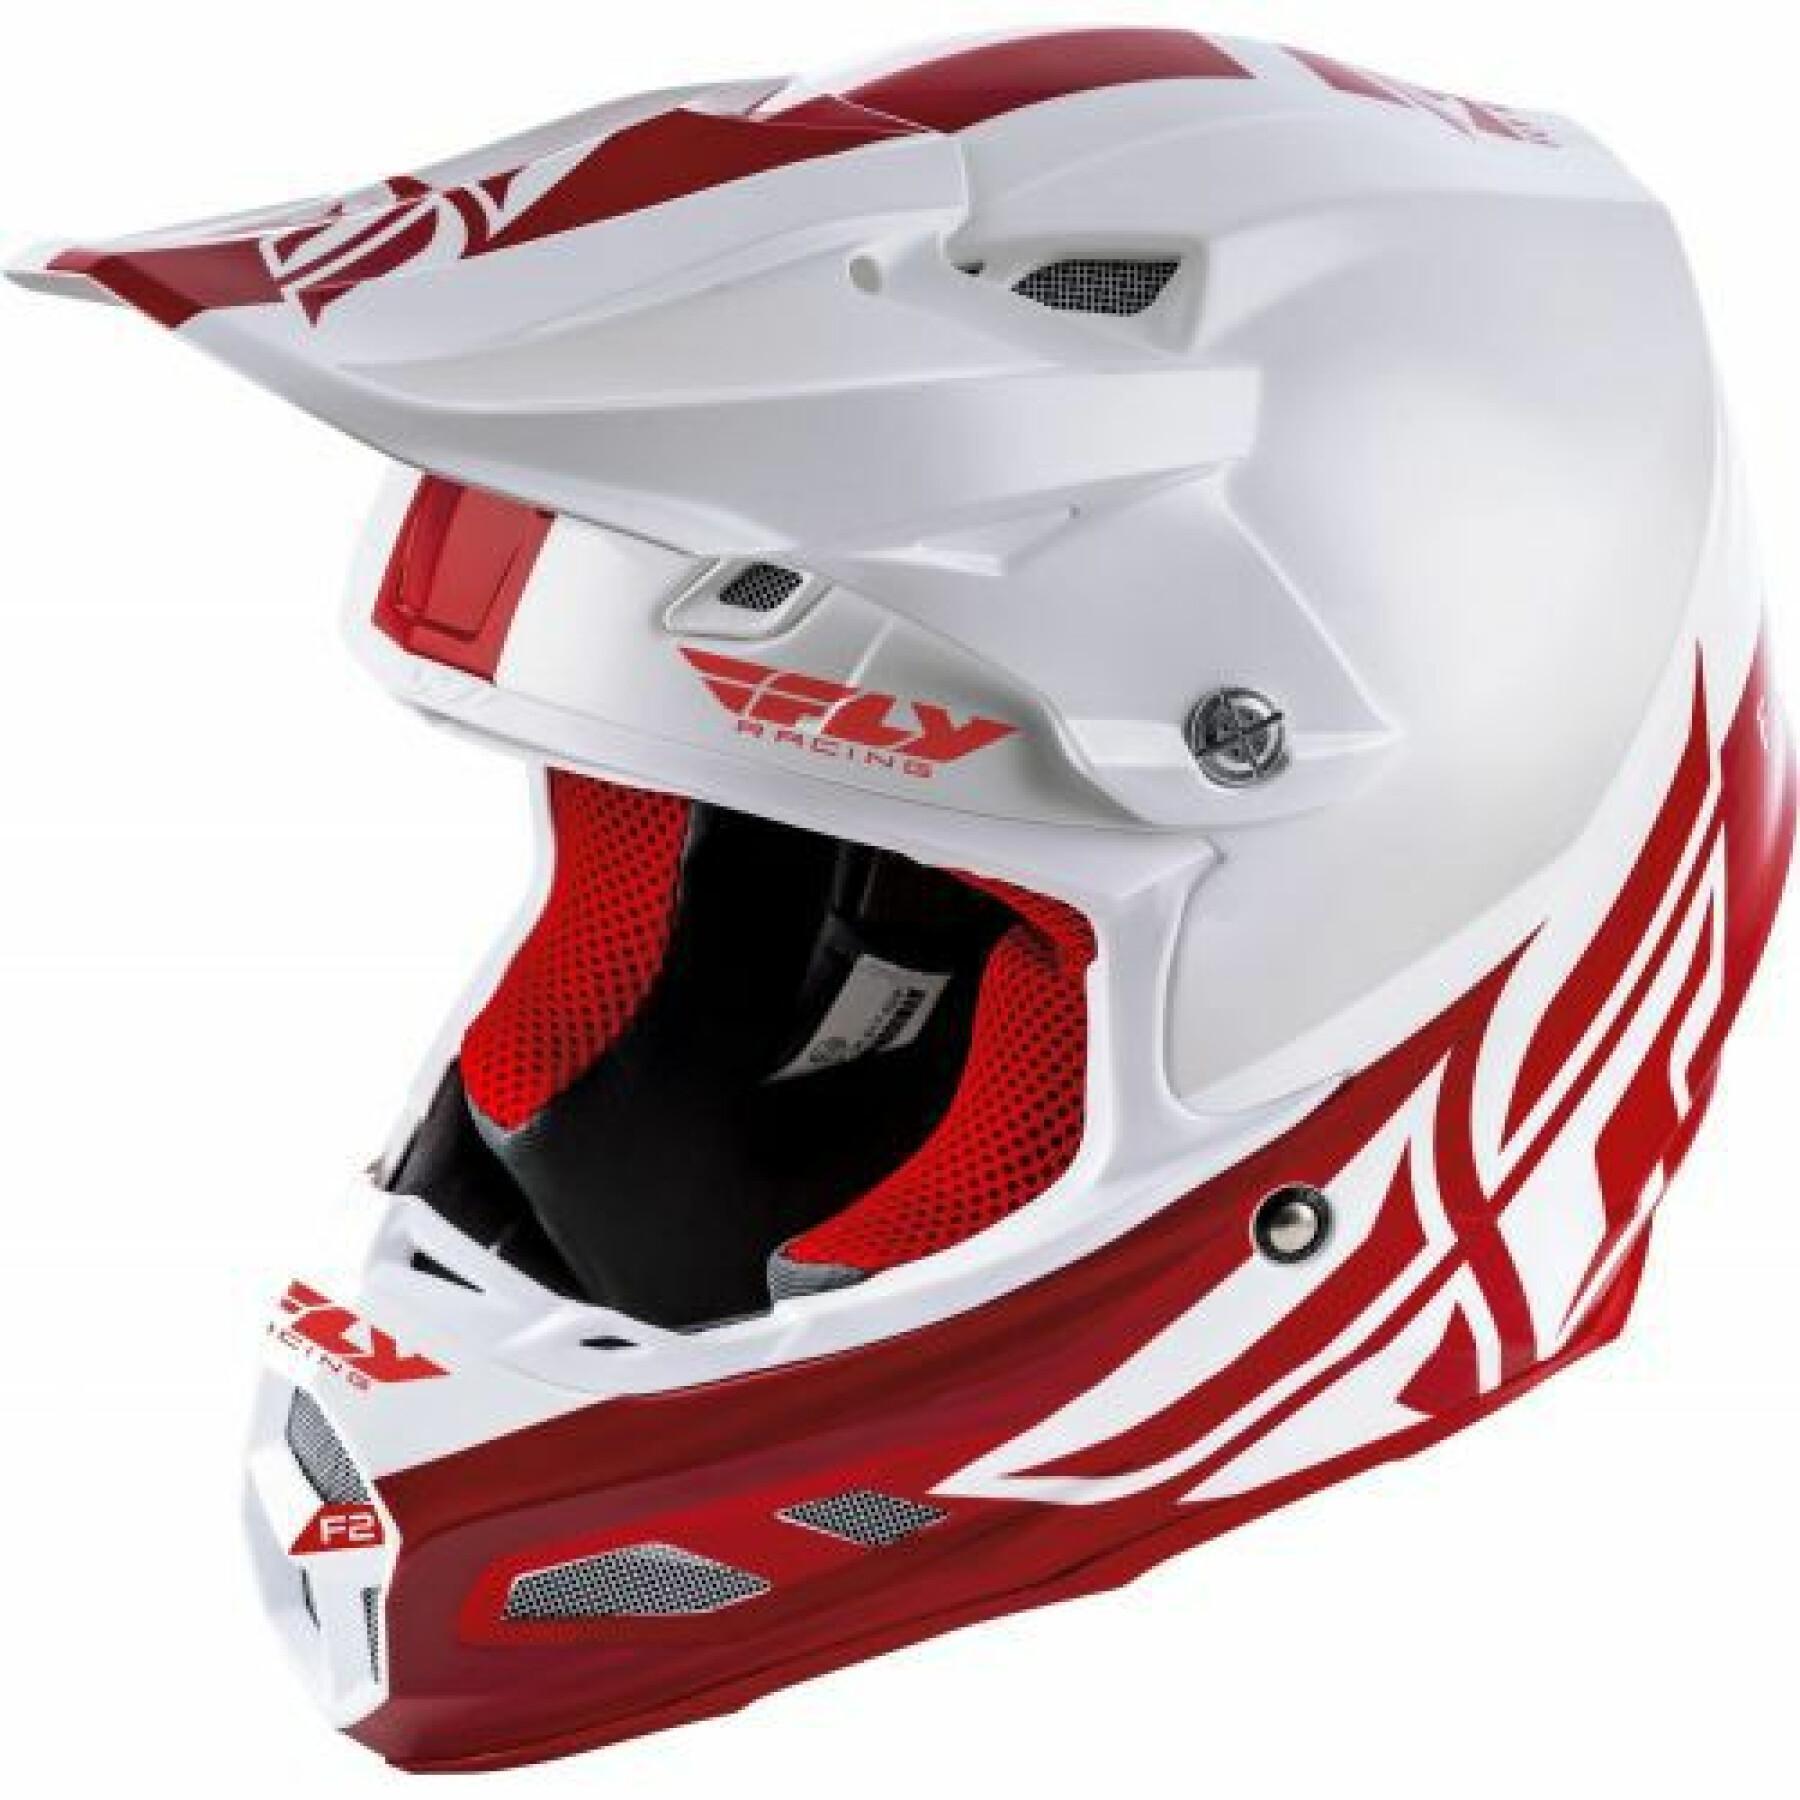 Motocrosshjälm Fly Racing F2 Mips Shield 2020